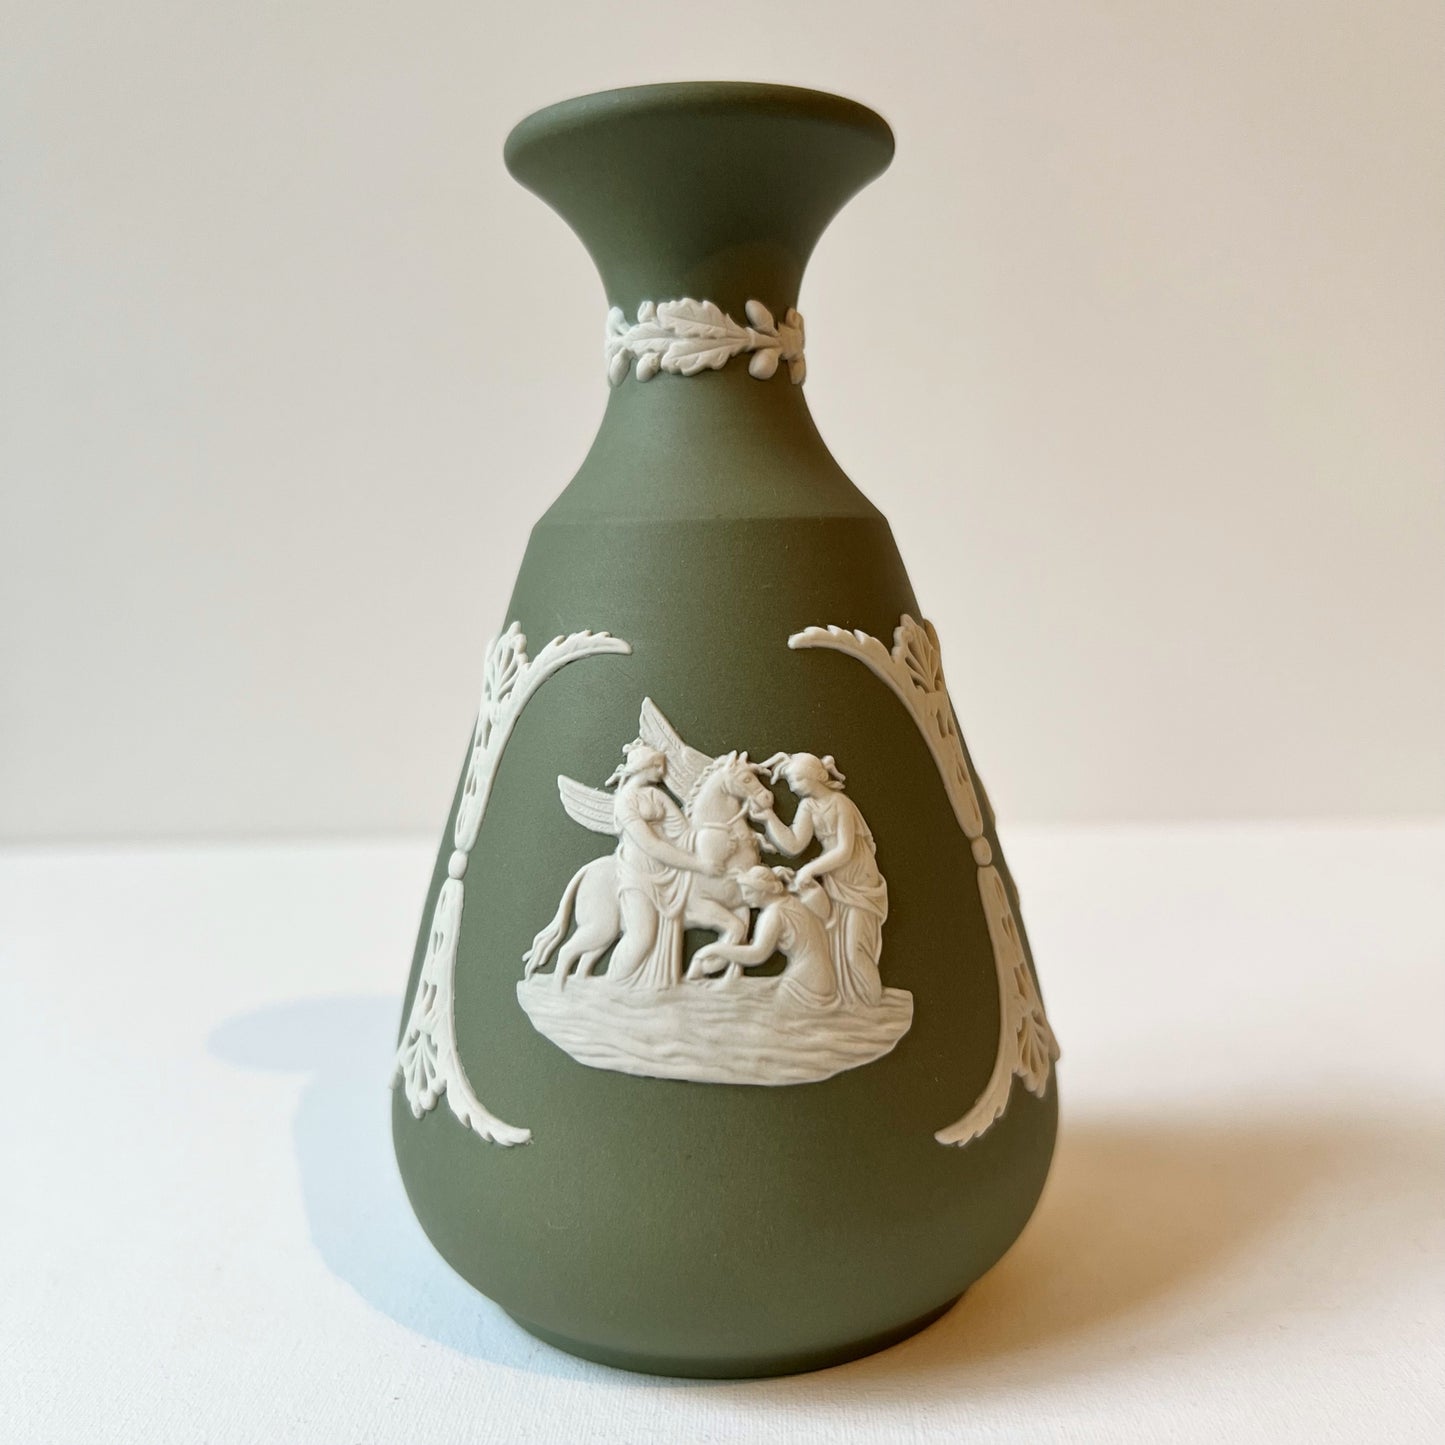 【Vintage】UK - Wedgwood 1960s Jasperware Bud vase “Offering to Cupid”（Green）